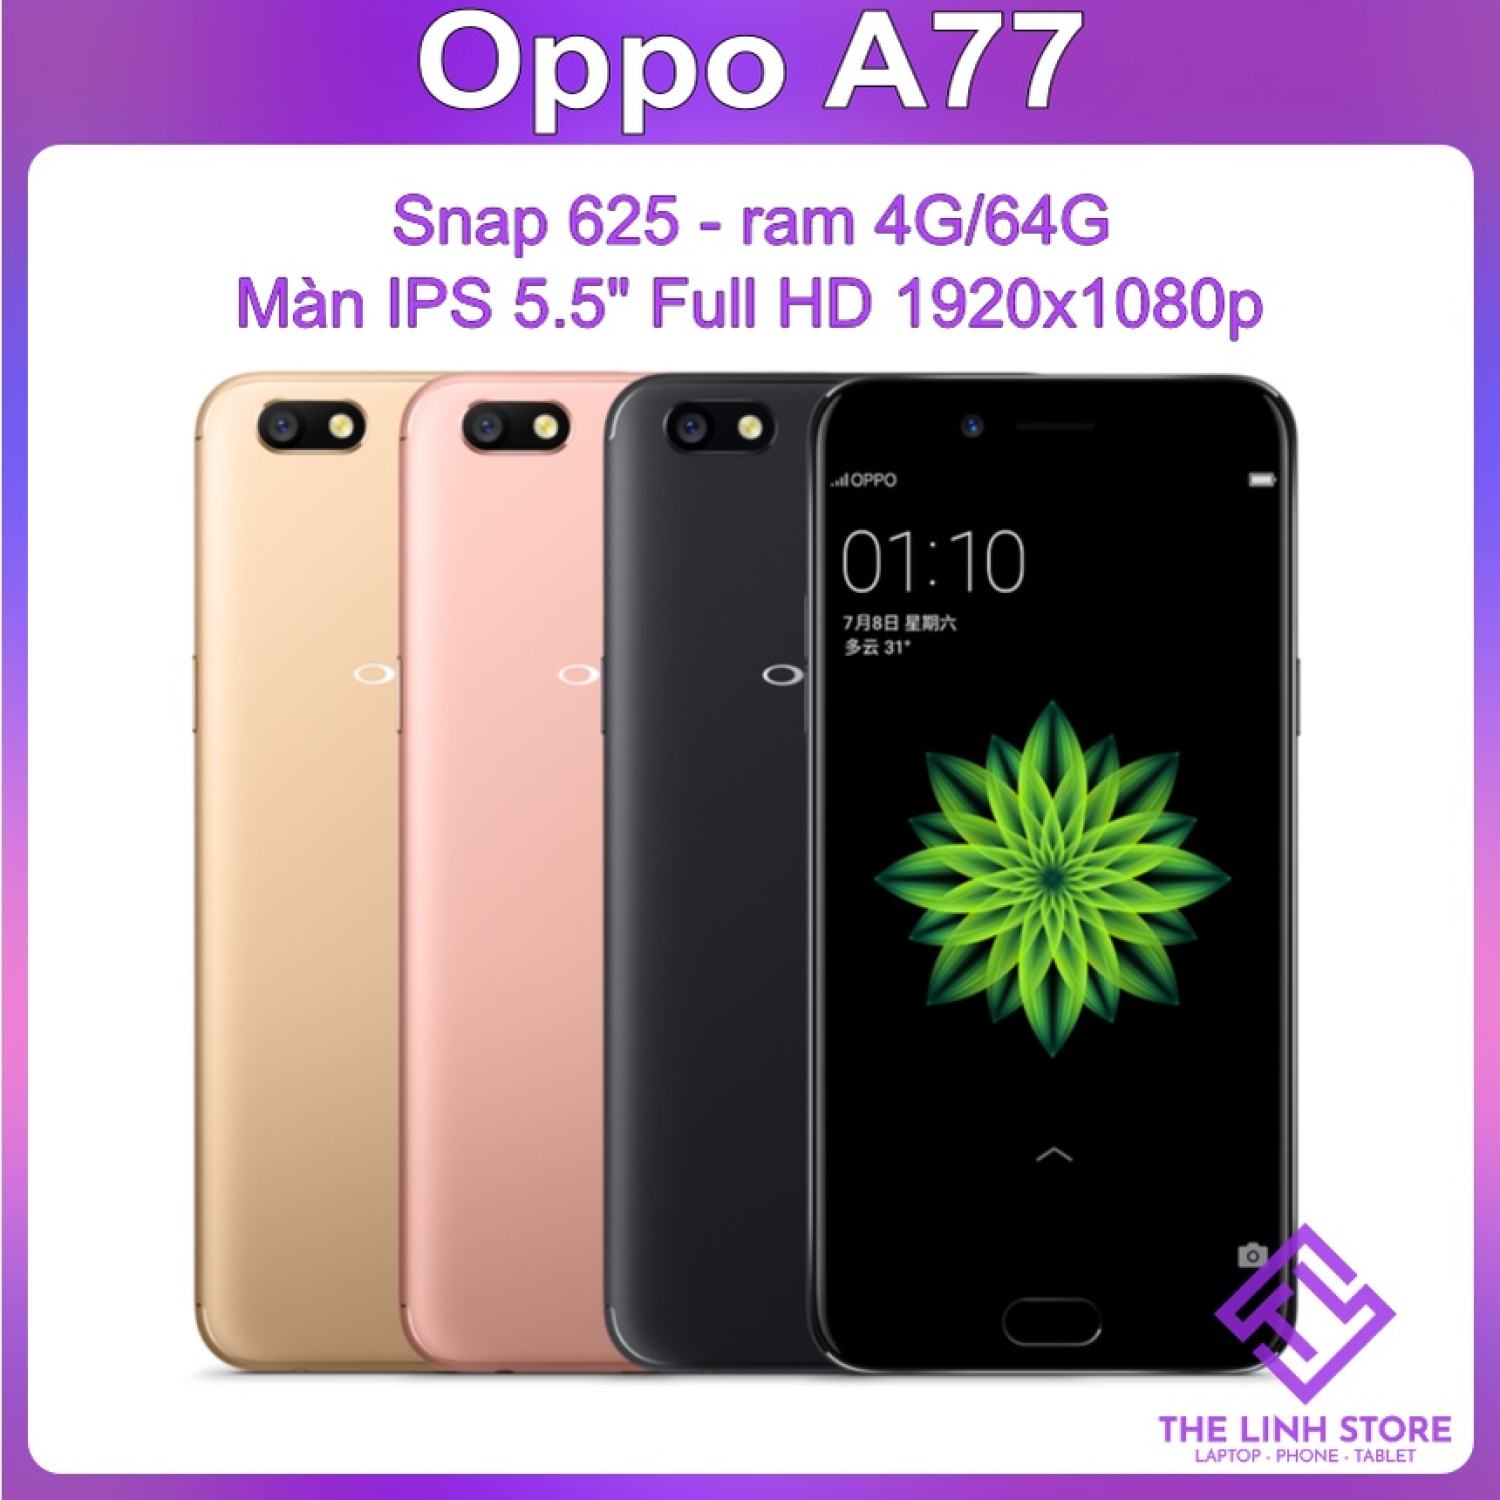 Điện thoại Oppo A77 màn 5.5 Full HD - Snap 625